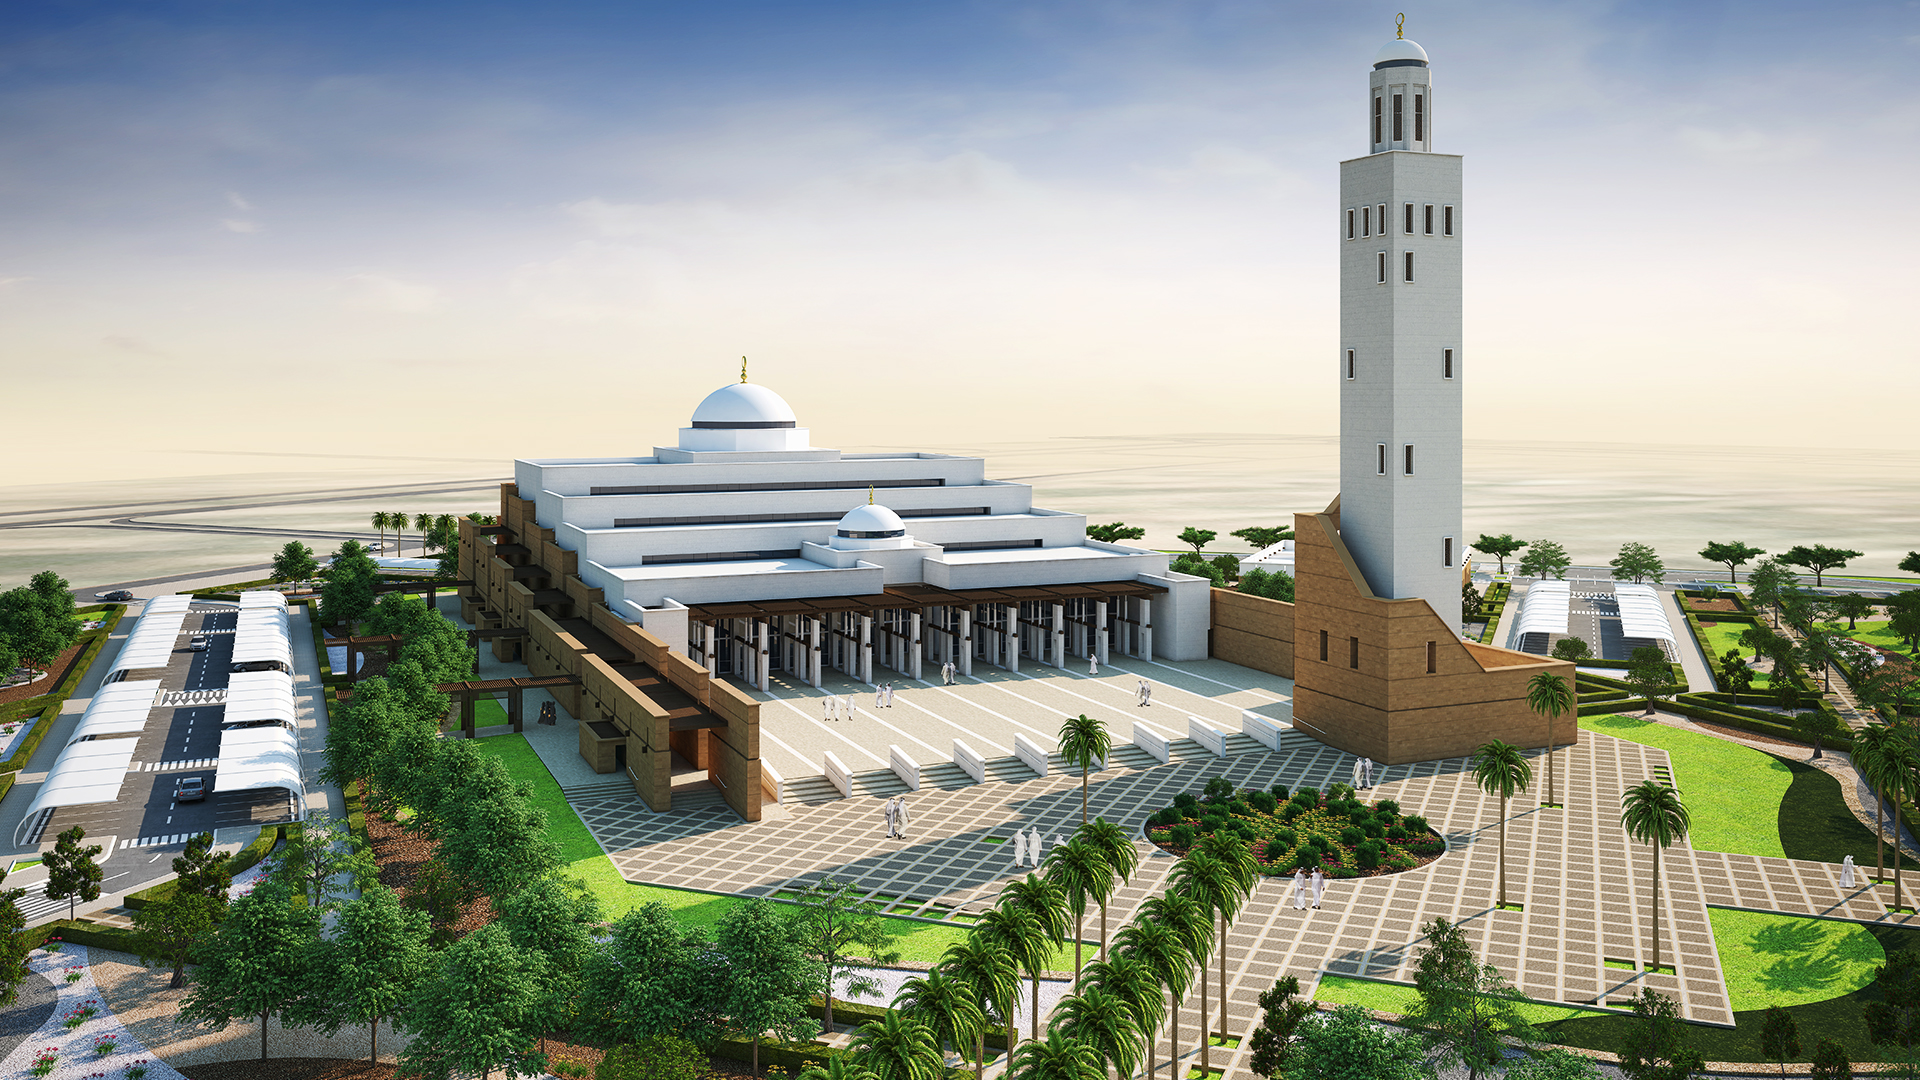 RAK Mosque